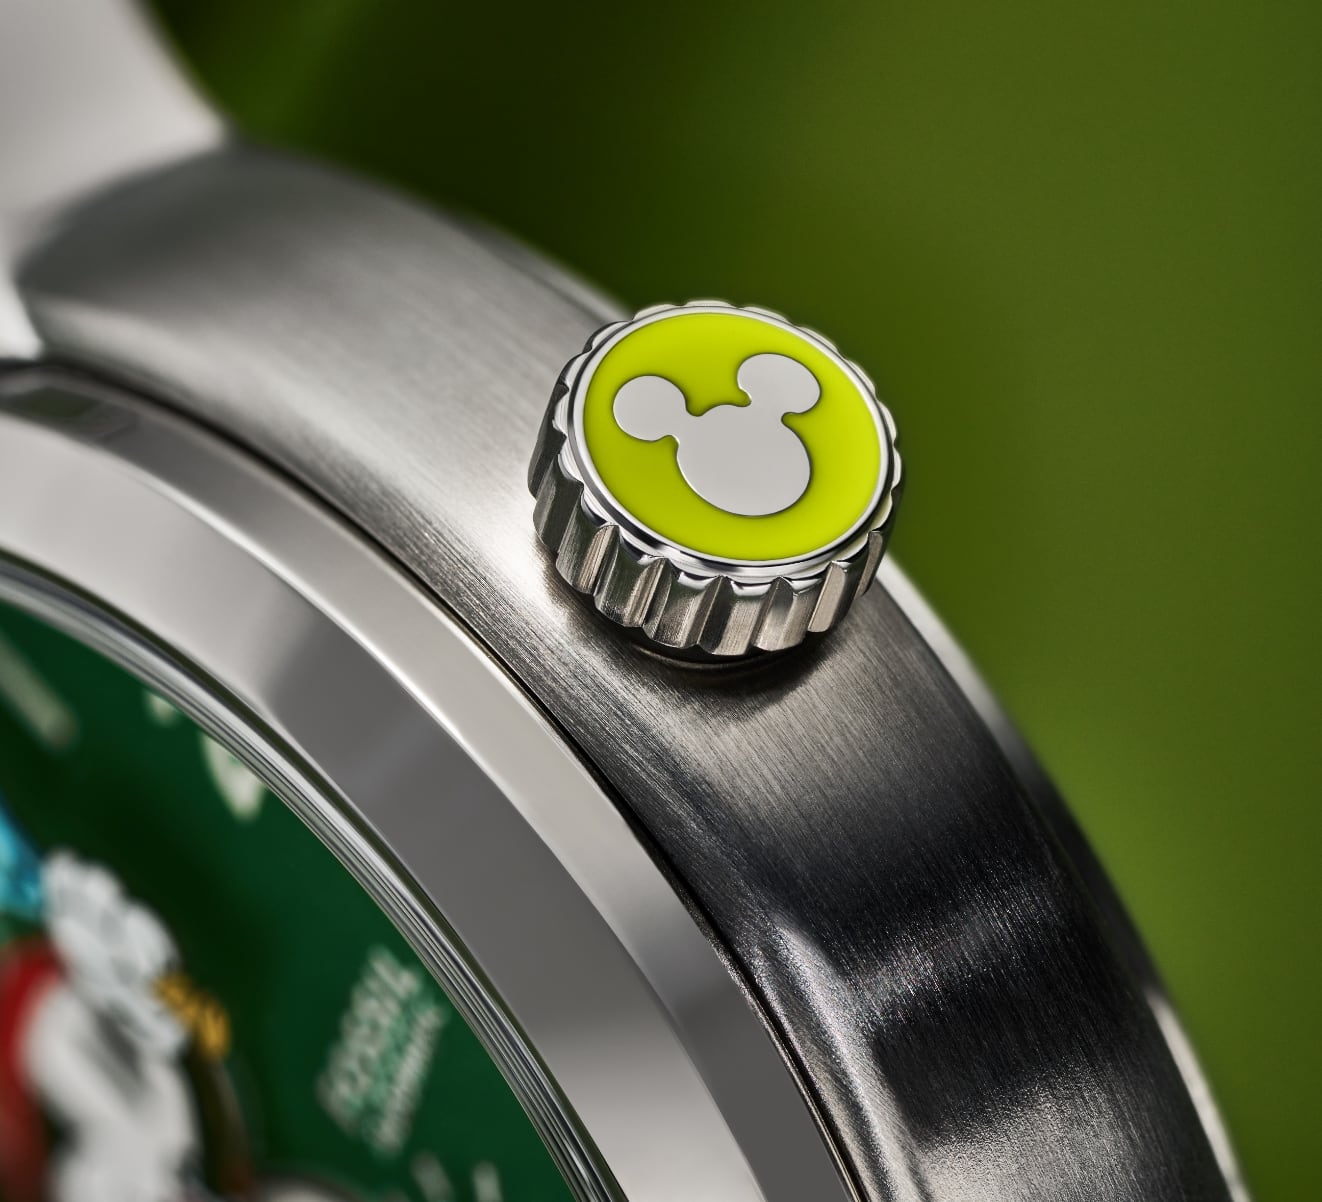 Ein GIF mit zwei Bildern, die den individuellen Gehäuseboden und die Krone der Uhr zeigen. Beide Modelle haben die vom Tennis inspirierte Silhouette von Disneys Micky Maus.